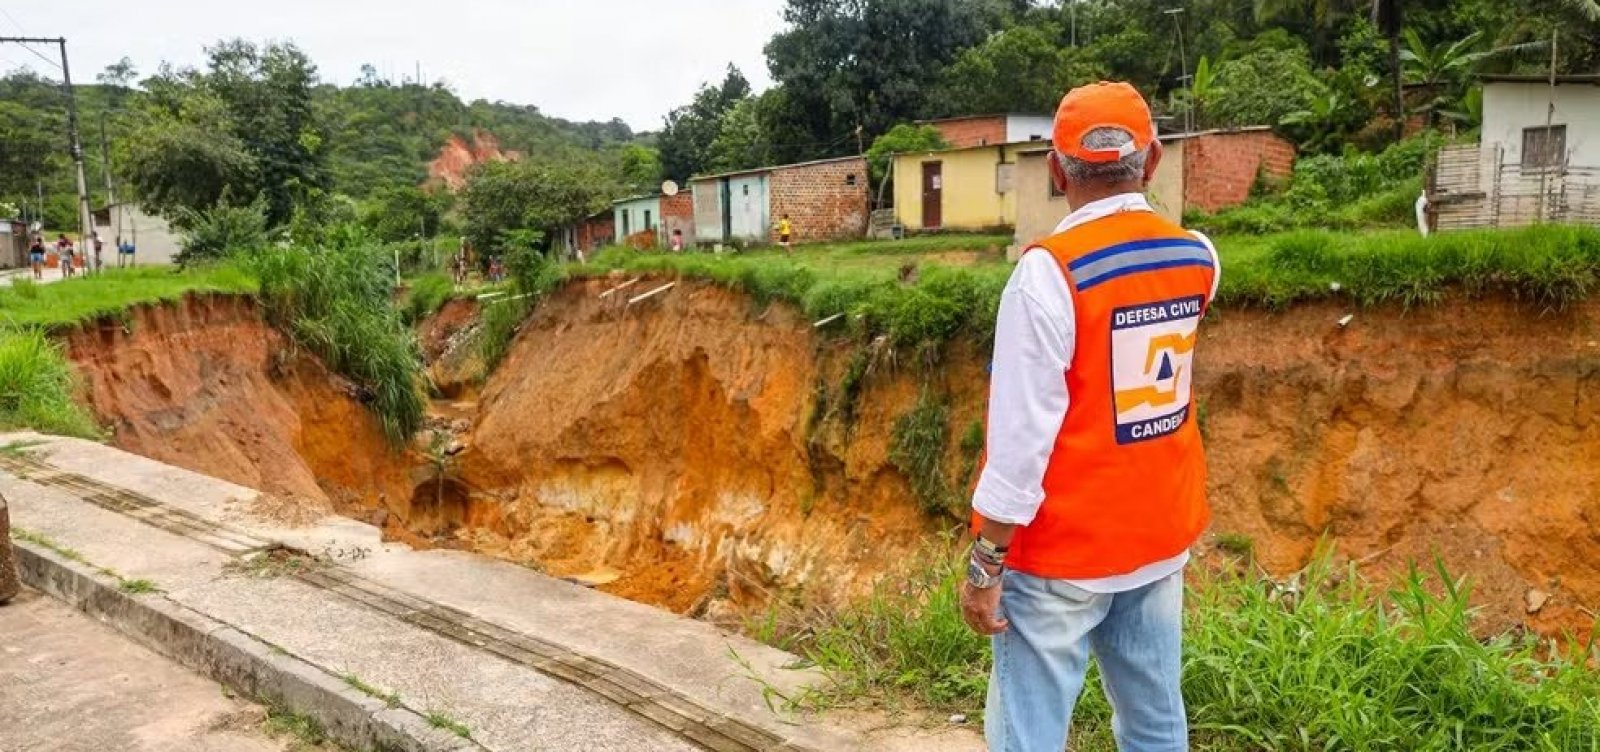 Erosão de solo em Candeias gera interdição de 38 casas